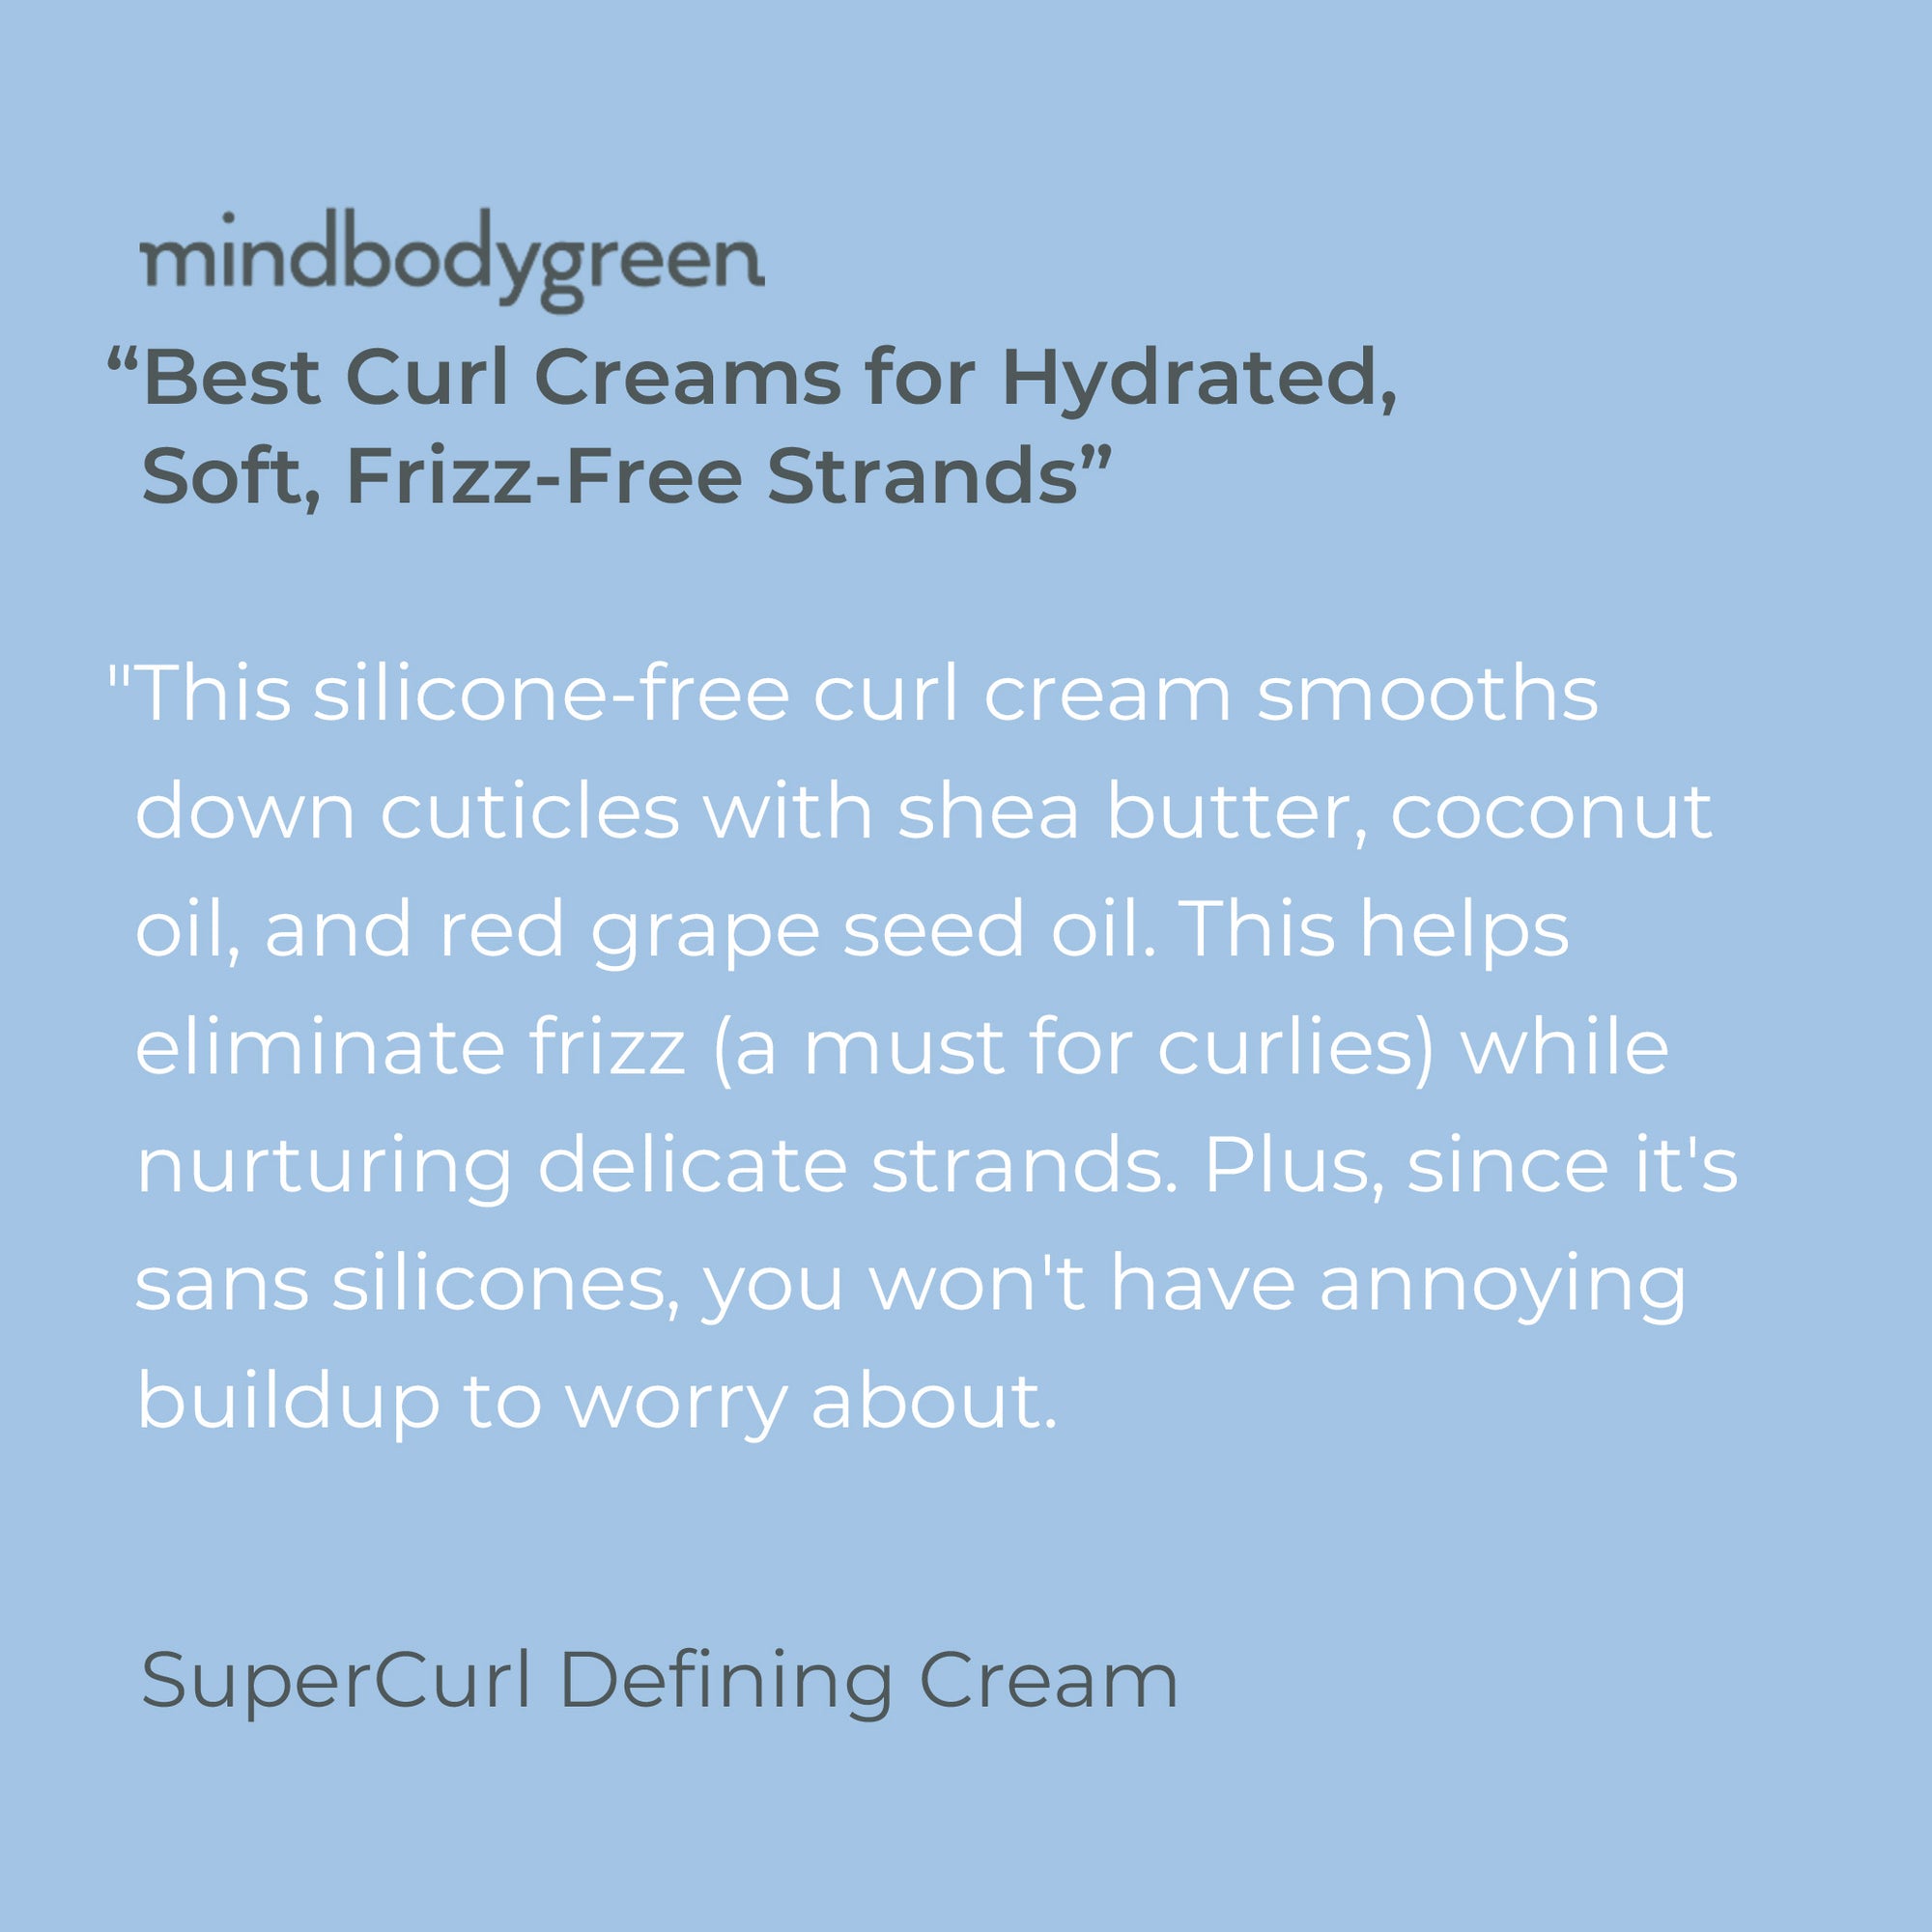 SuperCurl Defining Cream